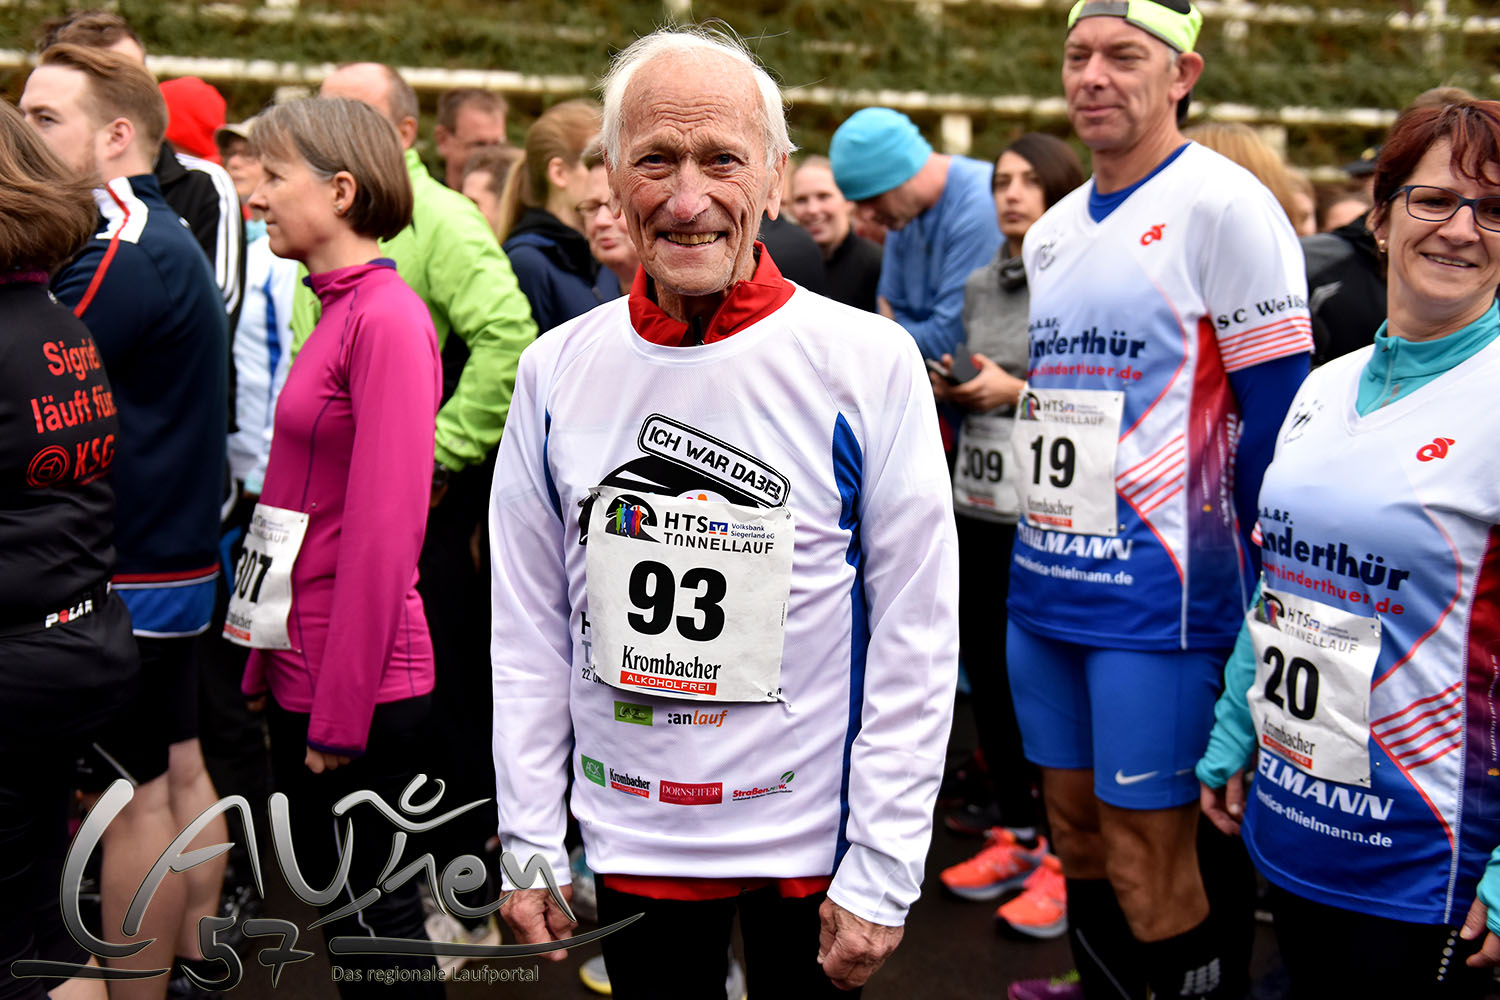 Rudi Oppermann aus Niederschelden trug die Startnummer 93. Er war mit 93 Jahren der älteste Teilnehmer.